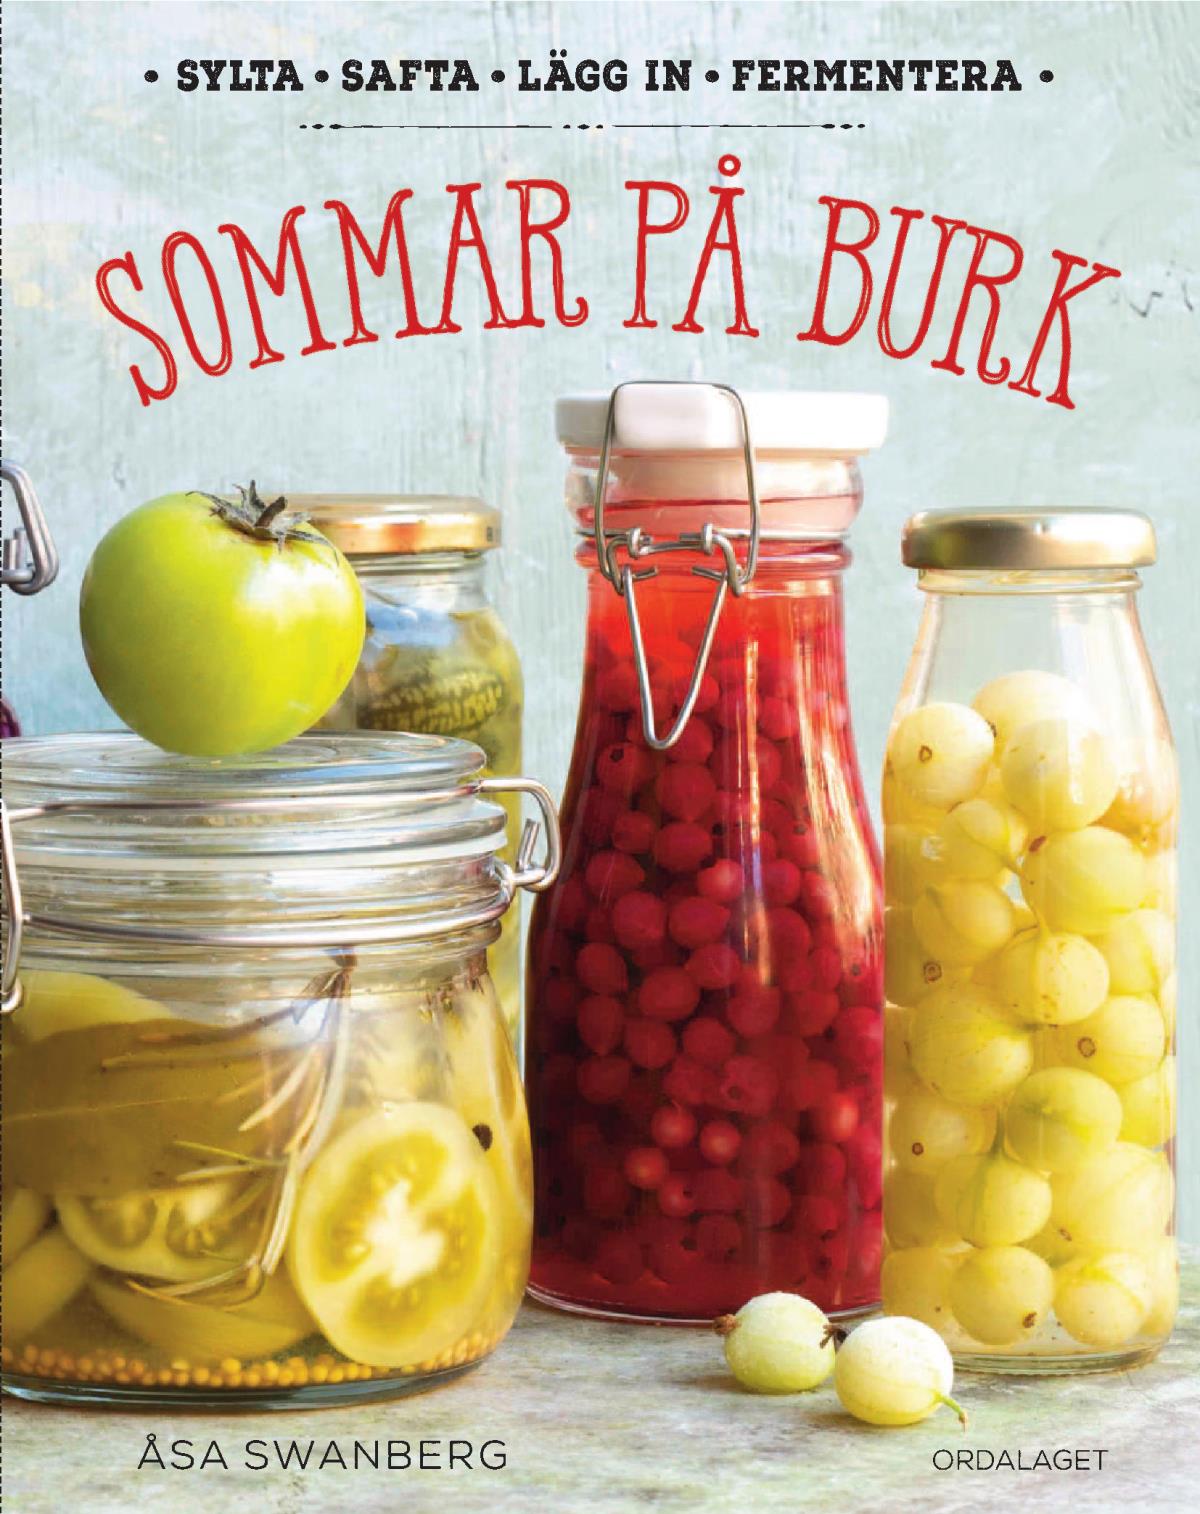 Sommar På Burk- Sylta, Safta, Lägg In, Fermentera